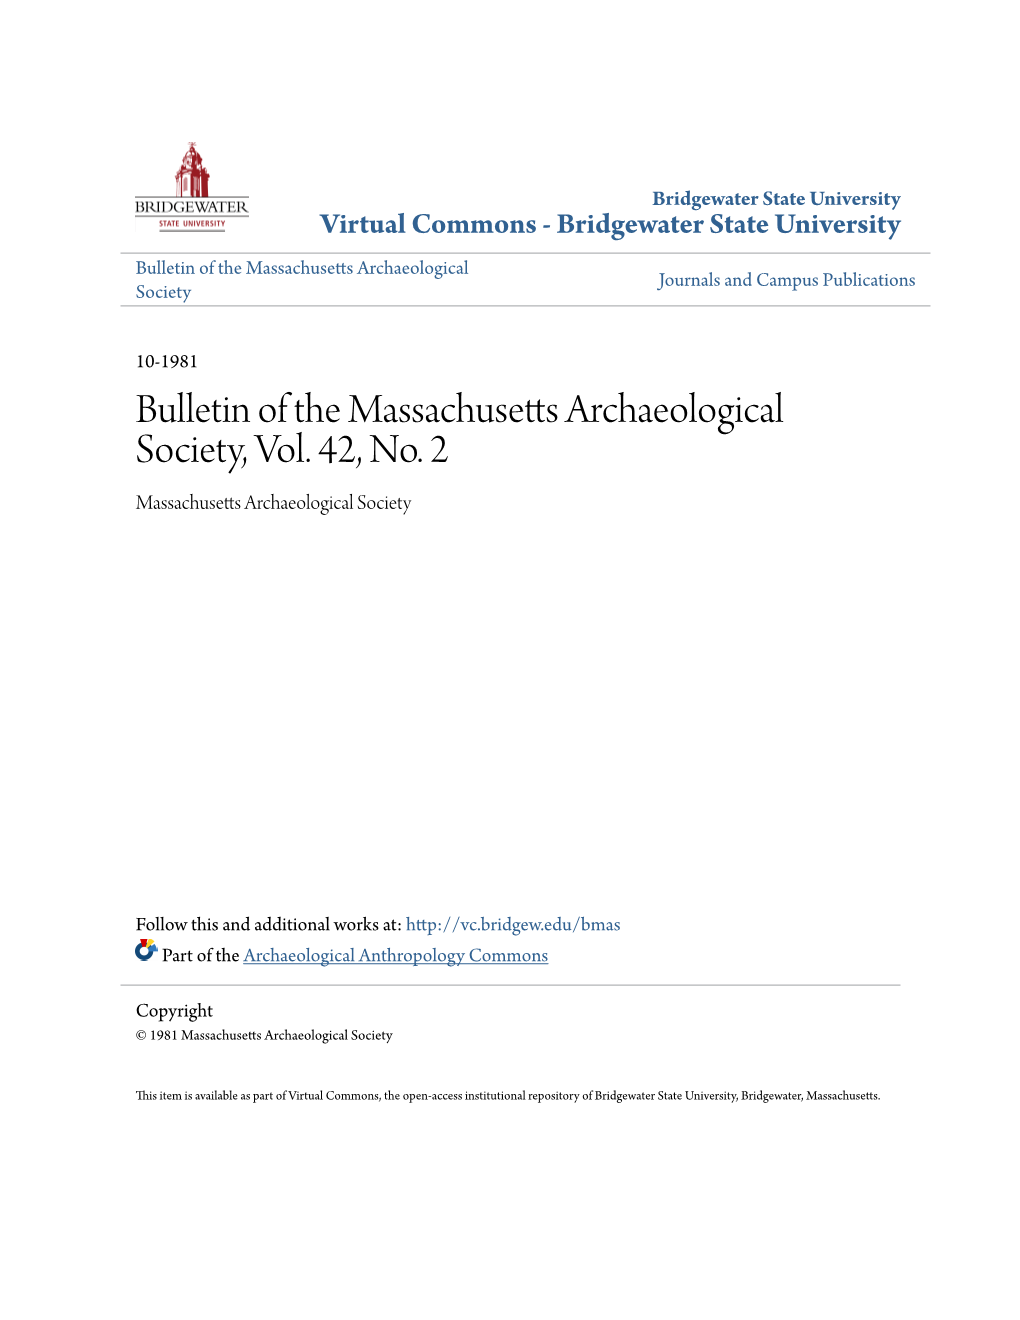 Bulletin of the Massachusetts Archaeological Society, Vol. 42, No. 2 Massachusetts Archaeological Society